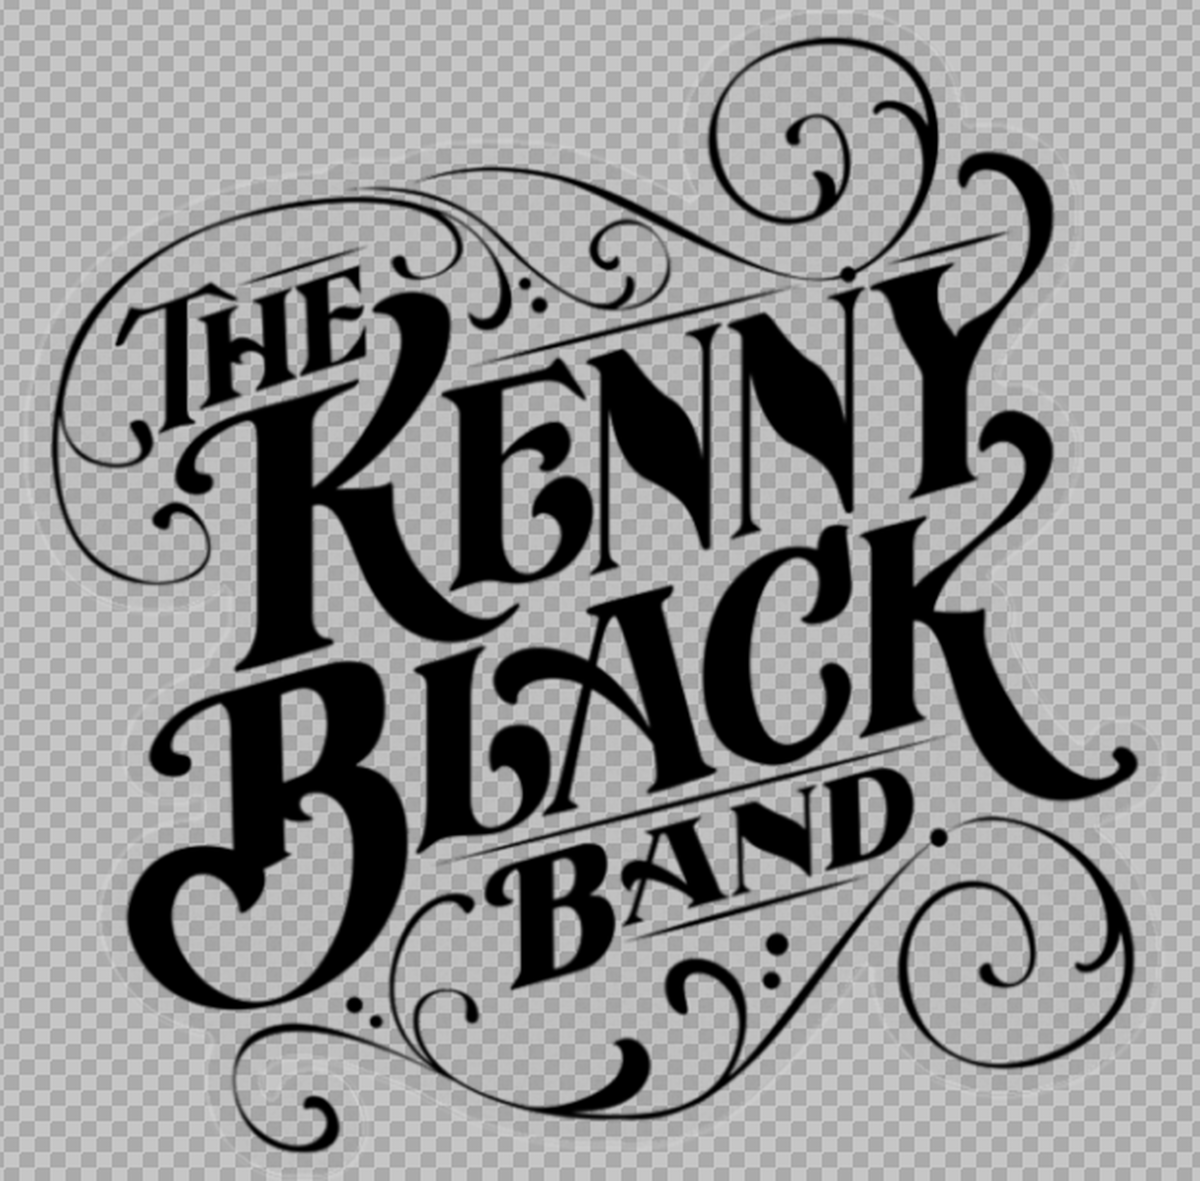 バンドオリジナル ステッカー クリア 10cm X 10cm The Kenny Black Band Official ザ ケニーブラック バンド オフィシャル